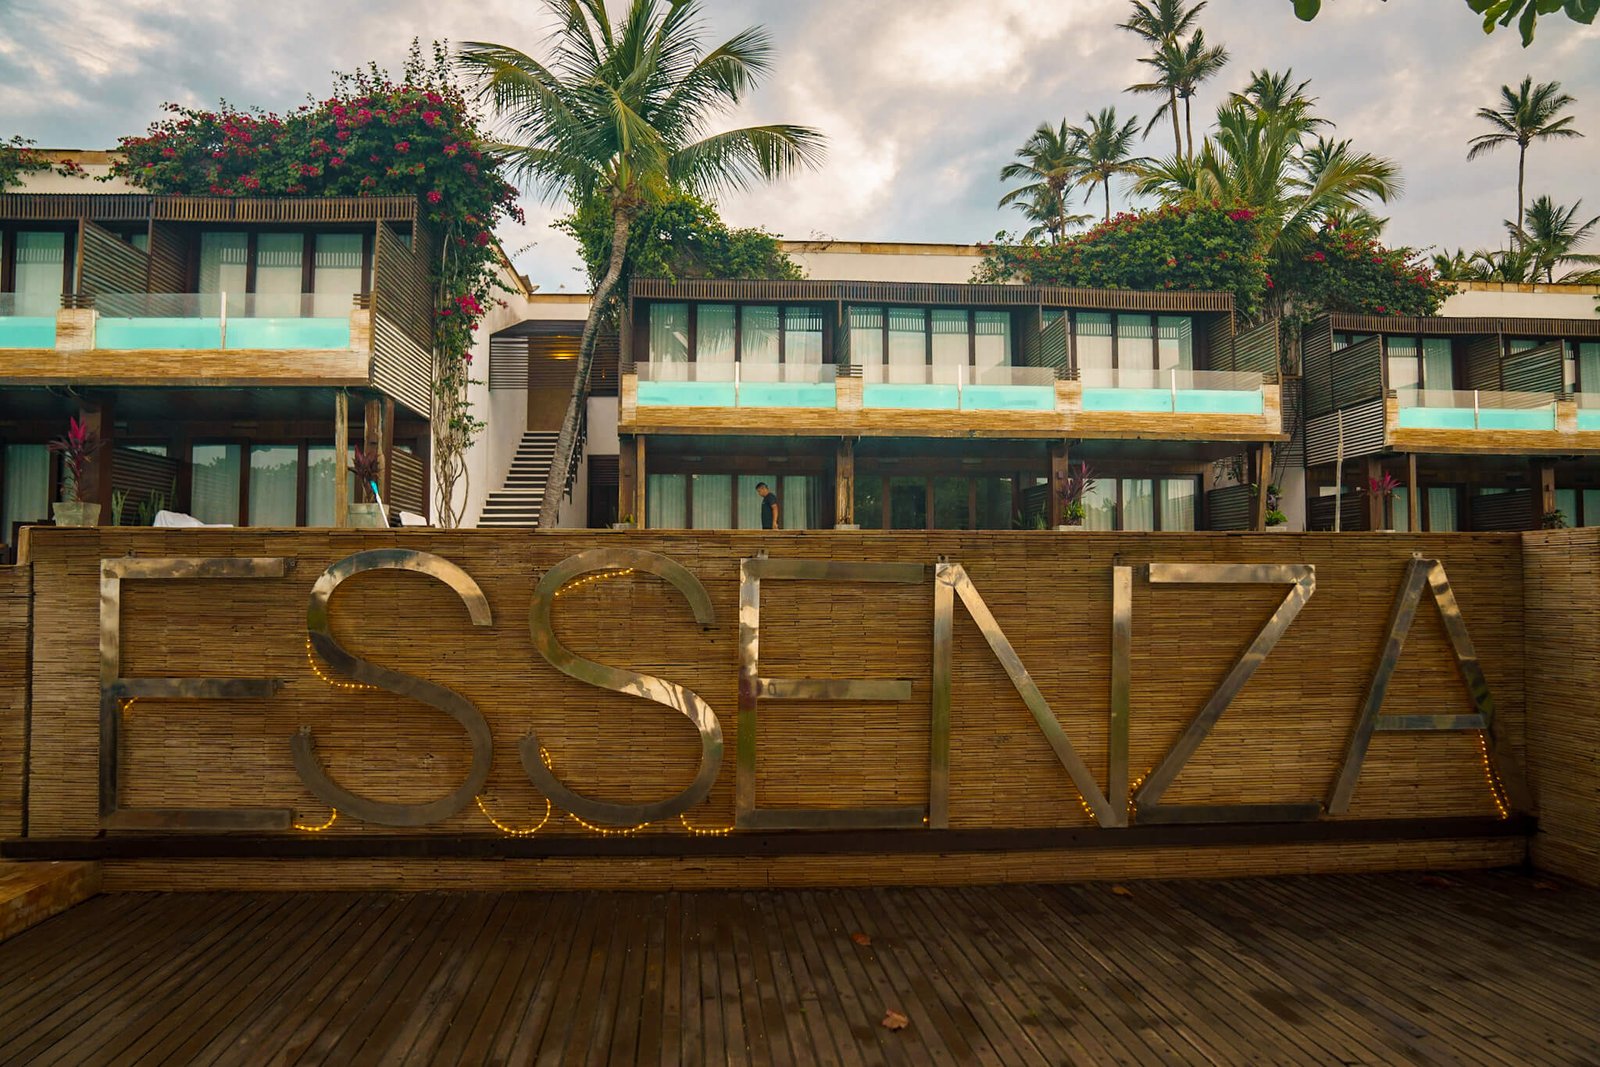 Essenza Hotel, Jericoacoara Beach in Brazil